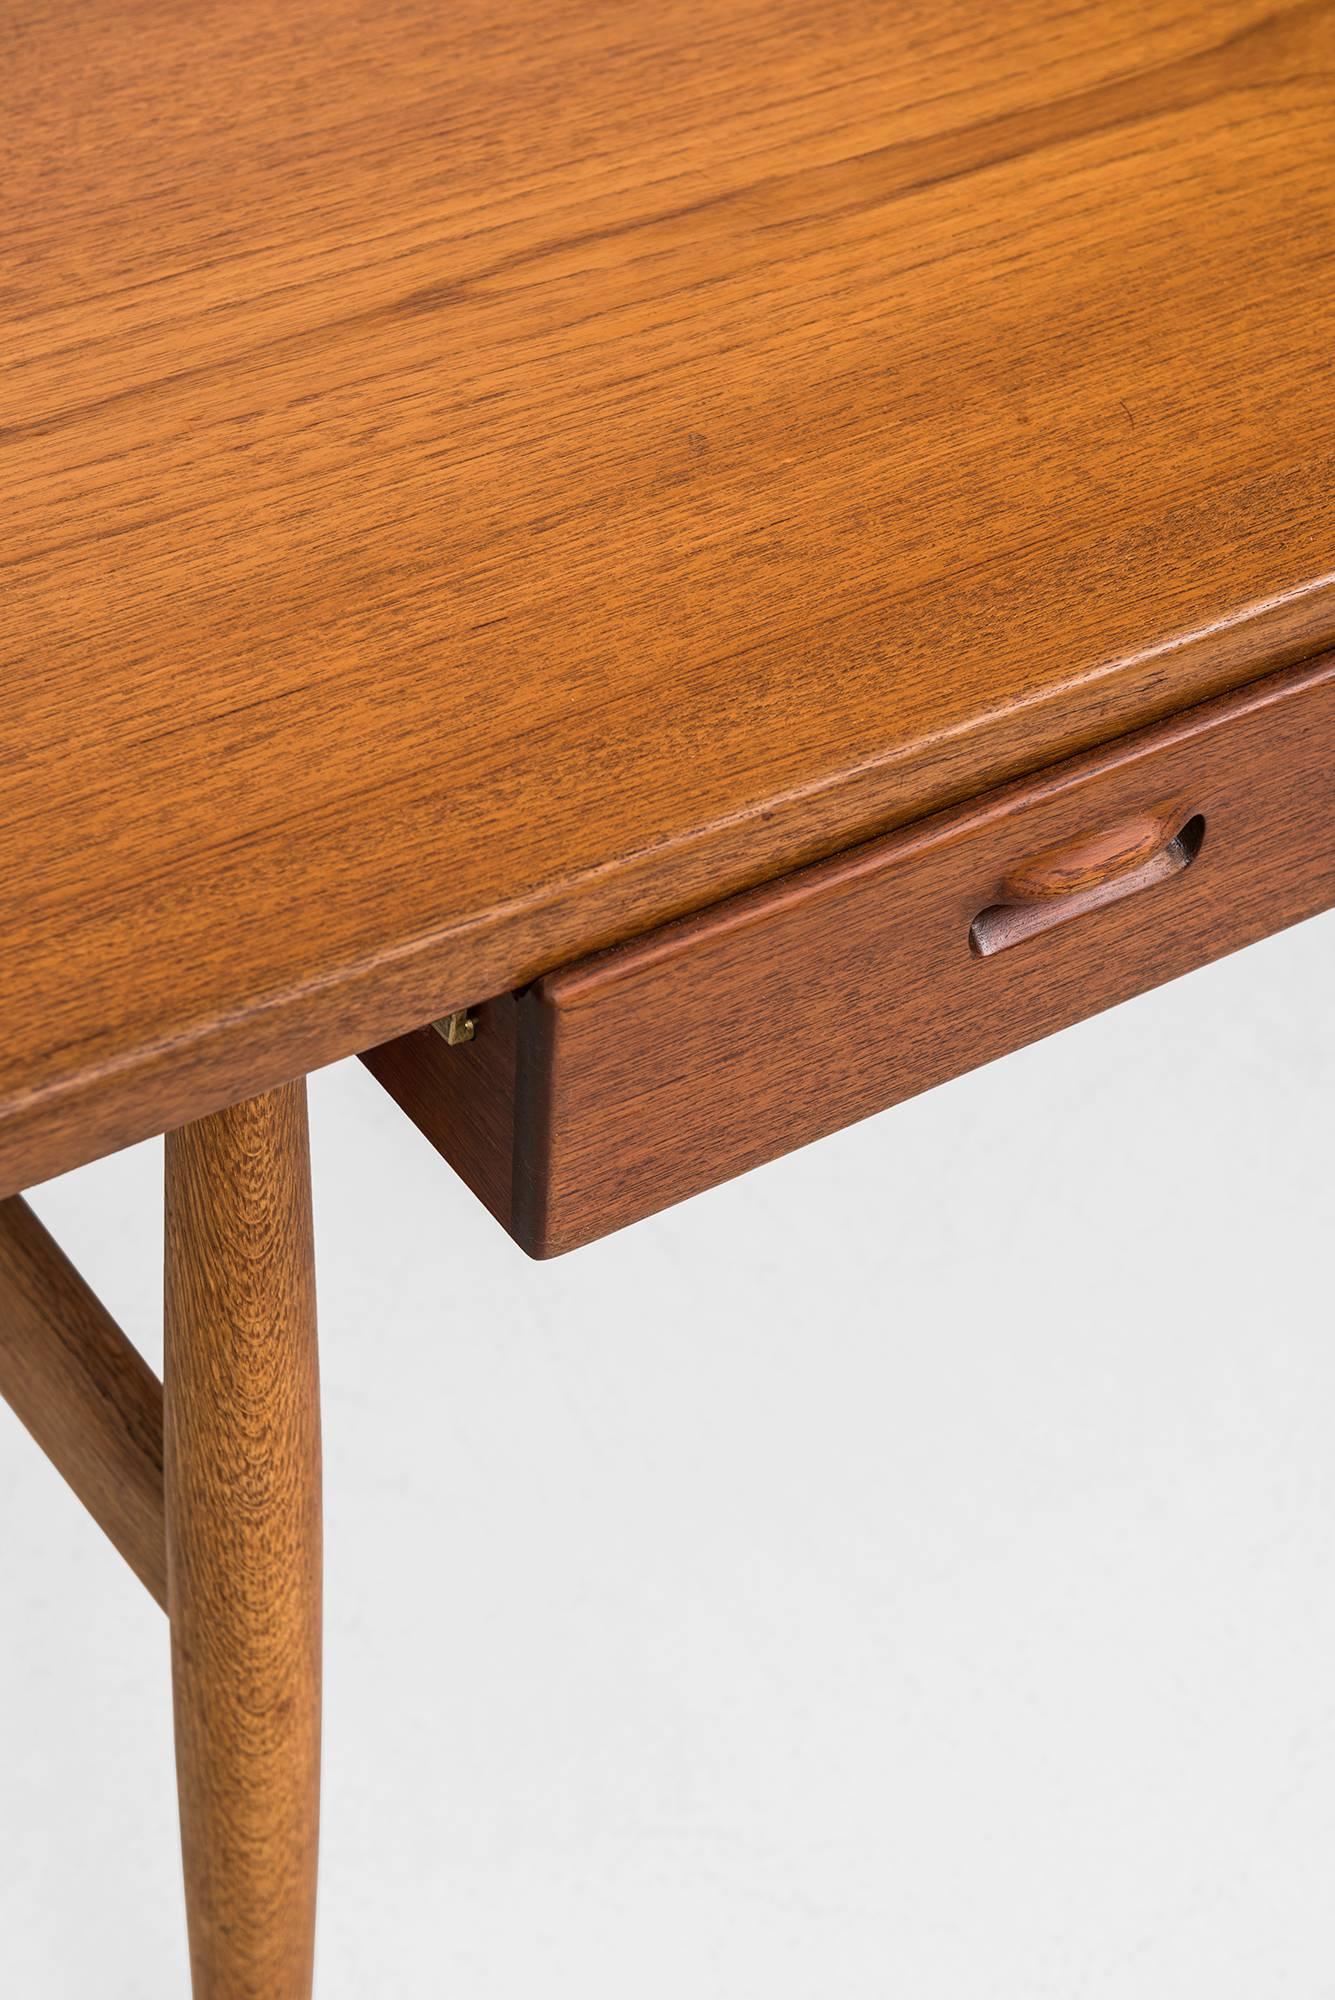 Very rare desk model JH 563 / wishbone designed by Hans Wegner. Produced by Johannes Hansen in Denmark.